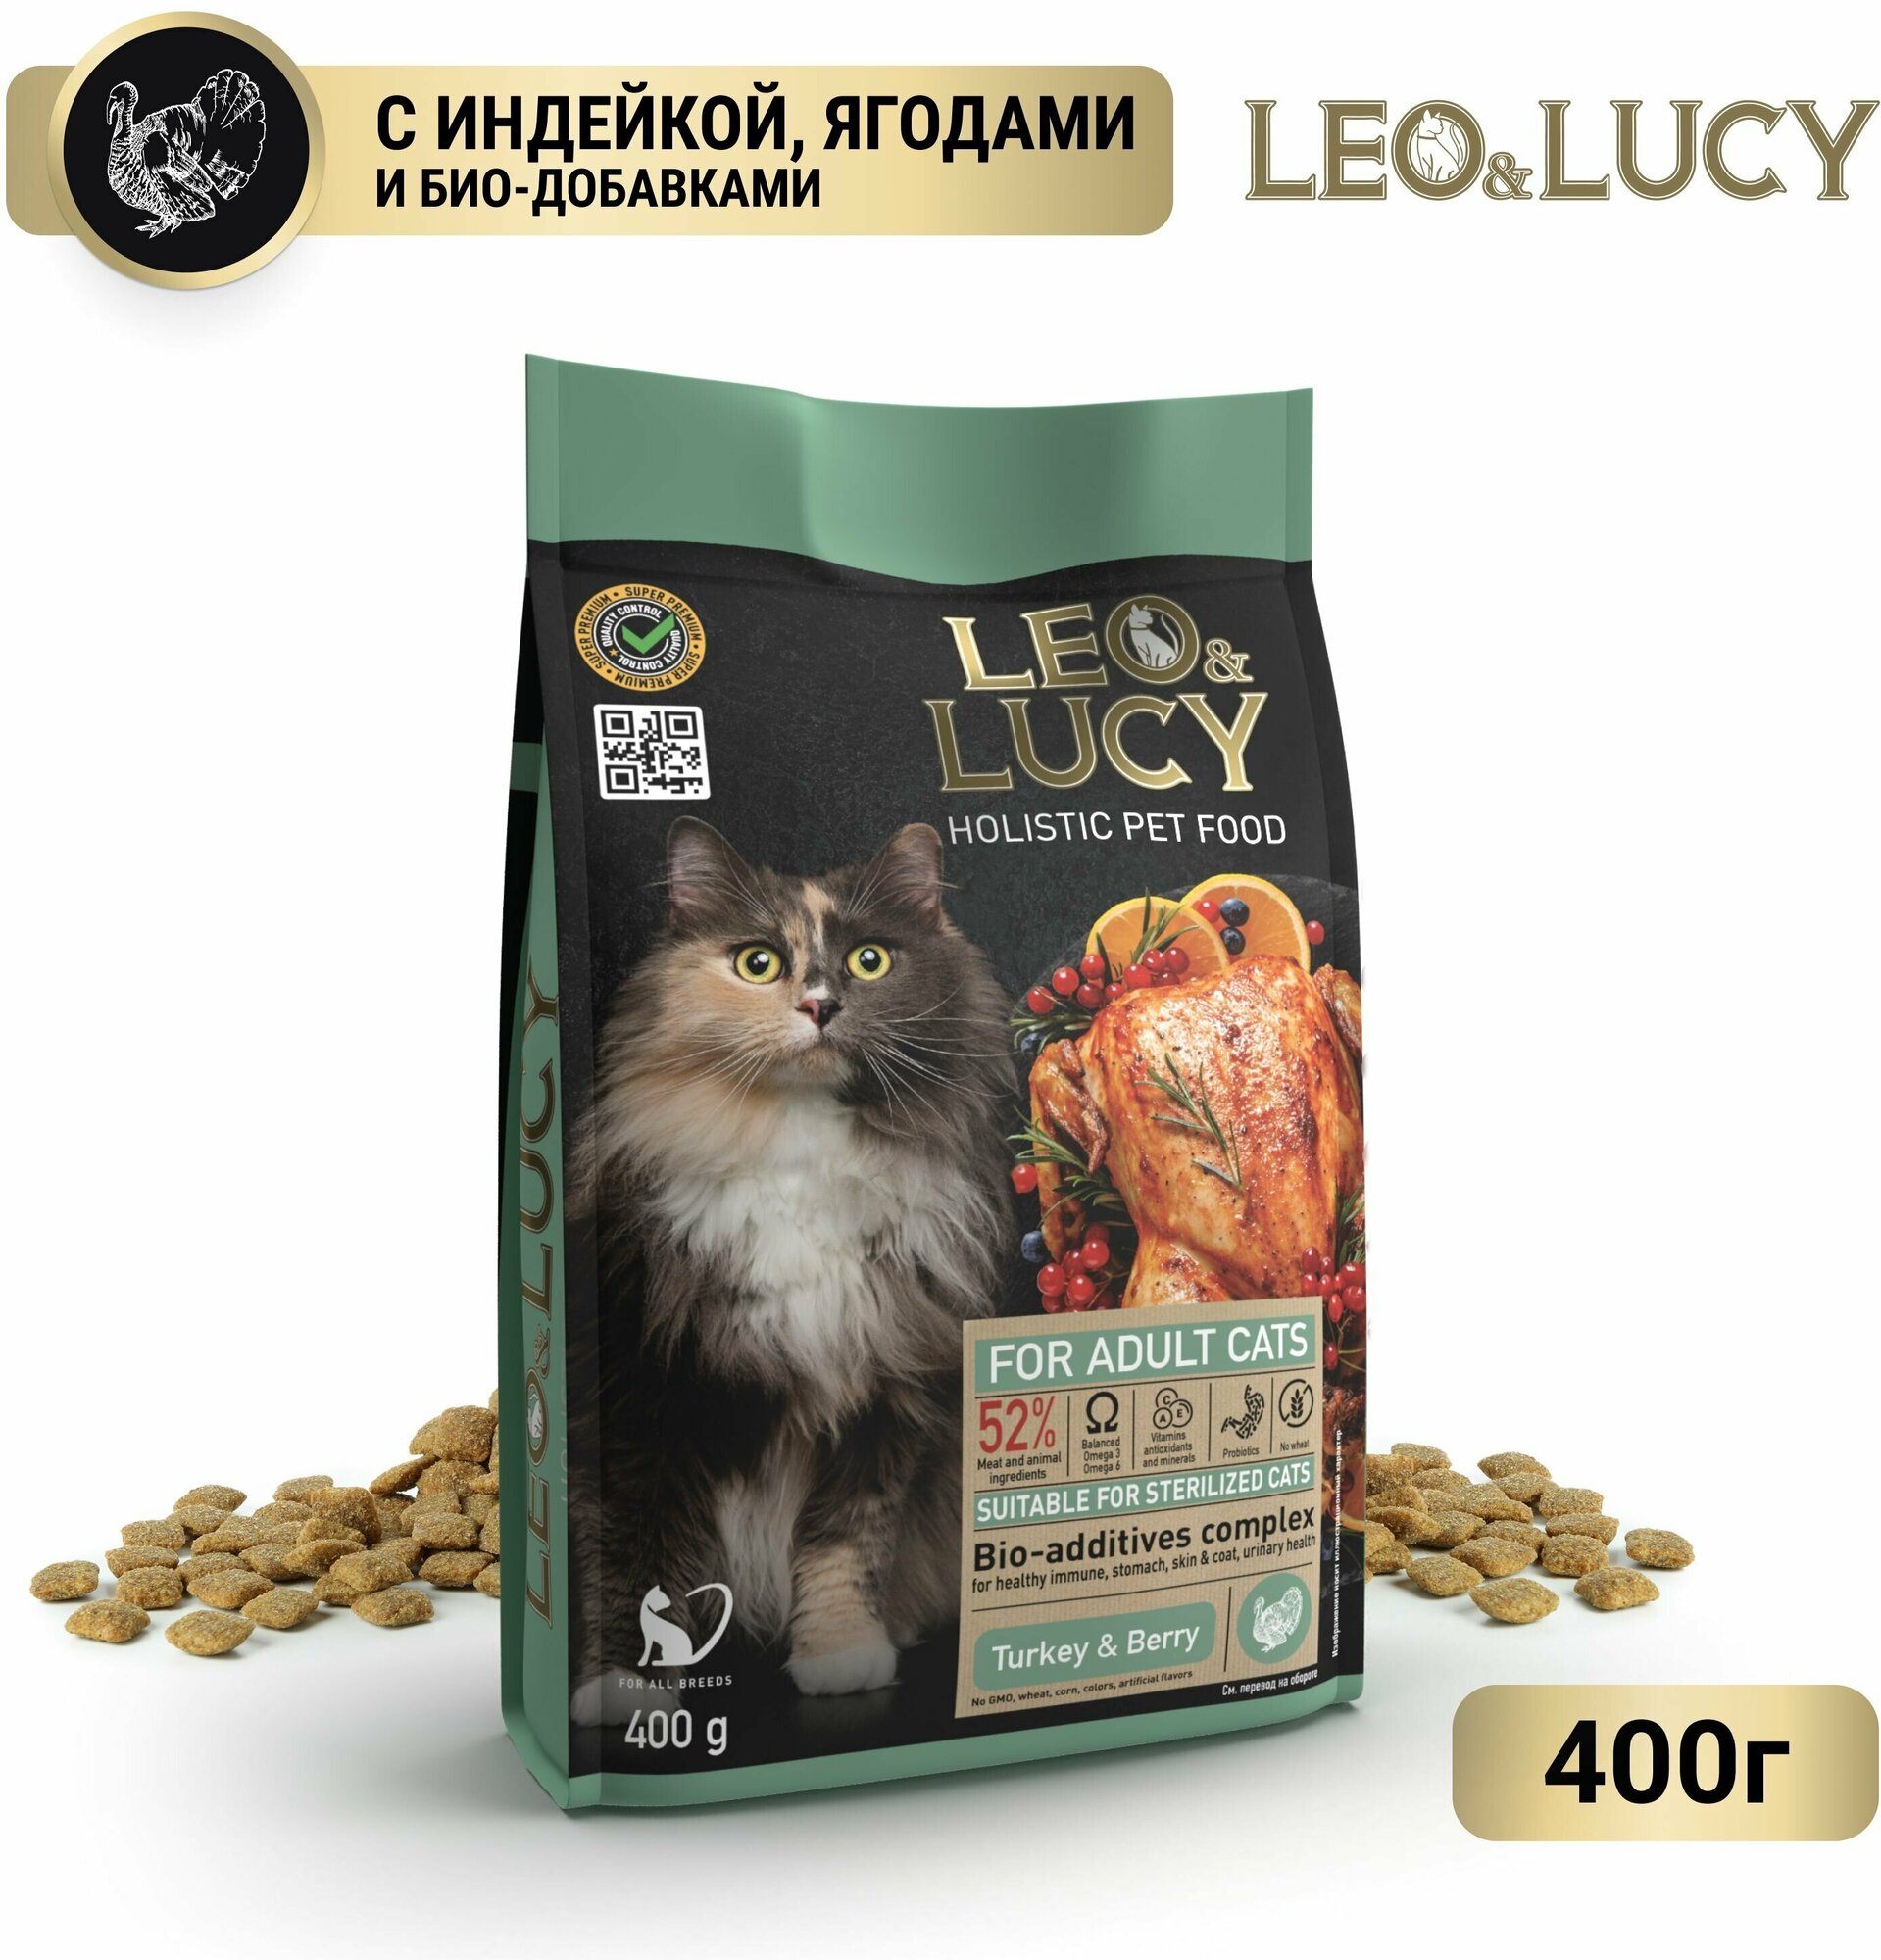 LEO&LUCY cухой холистик корм полнорационный для взрослых кошек с индейкой, ягодами и биодобавками, подходит для стерилизованных и пожилых, 400 г.